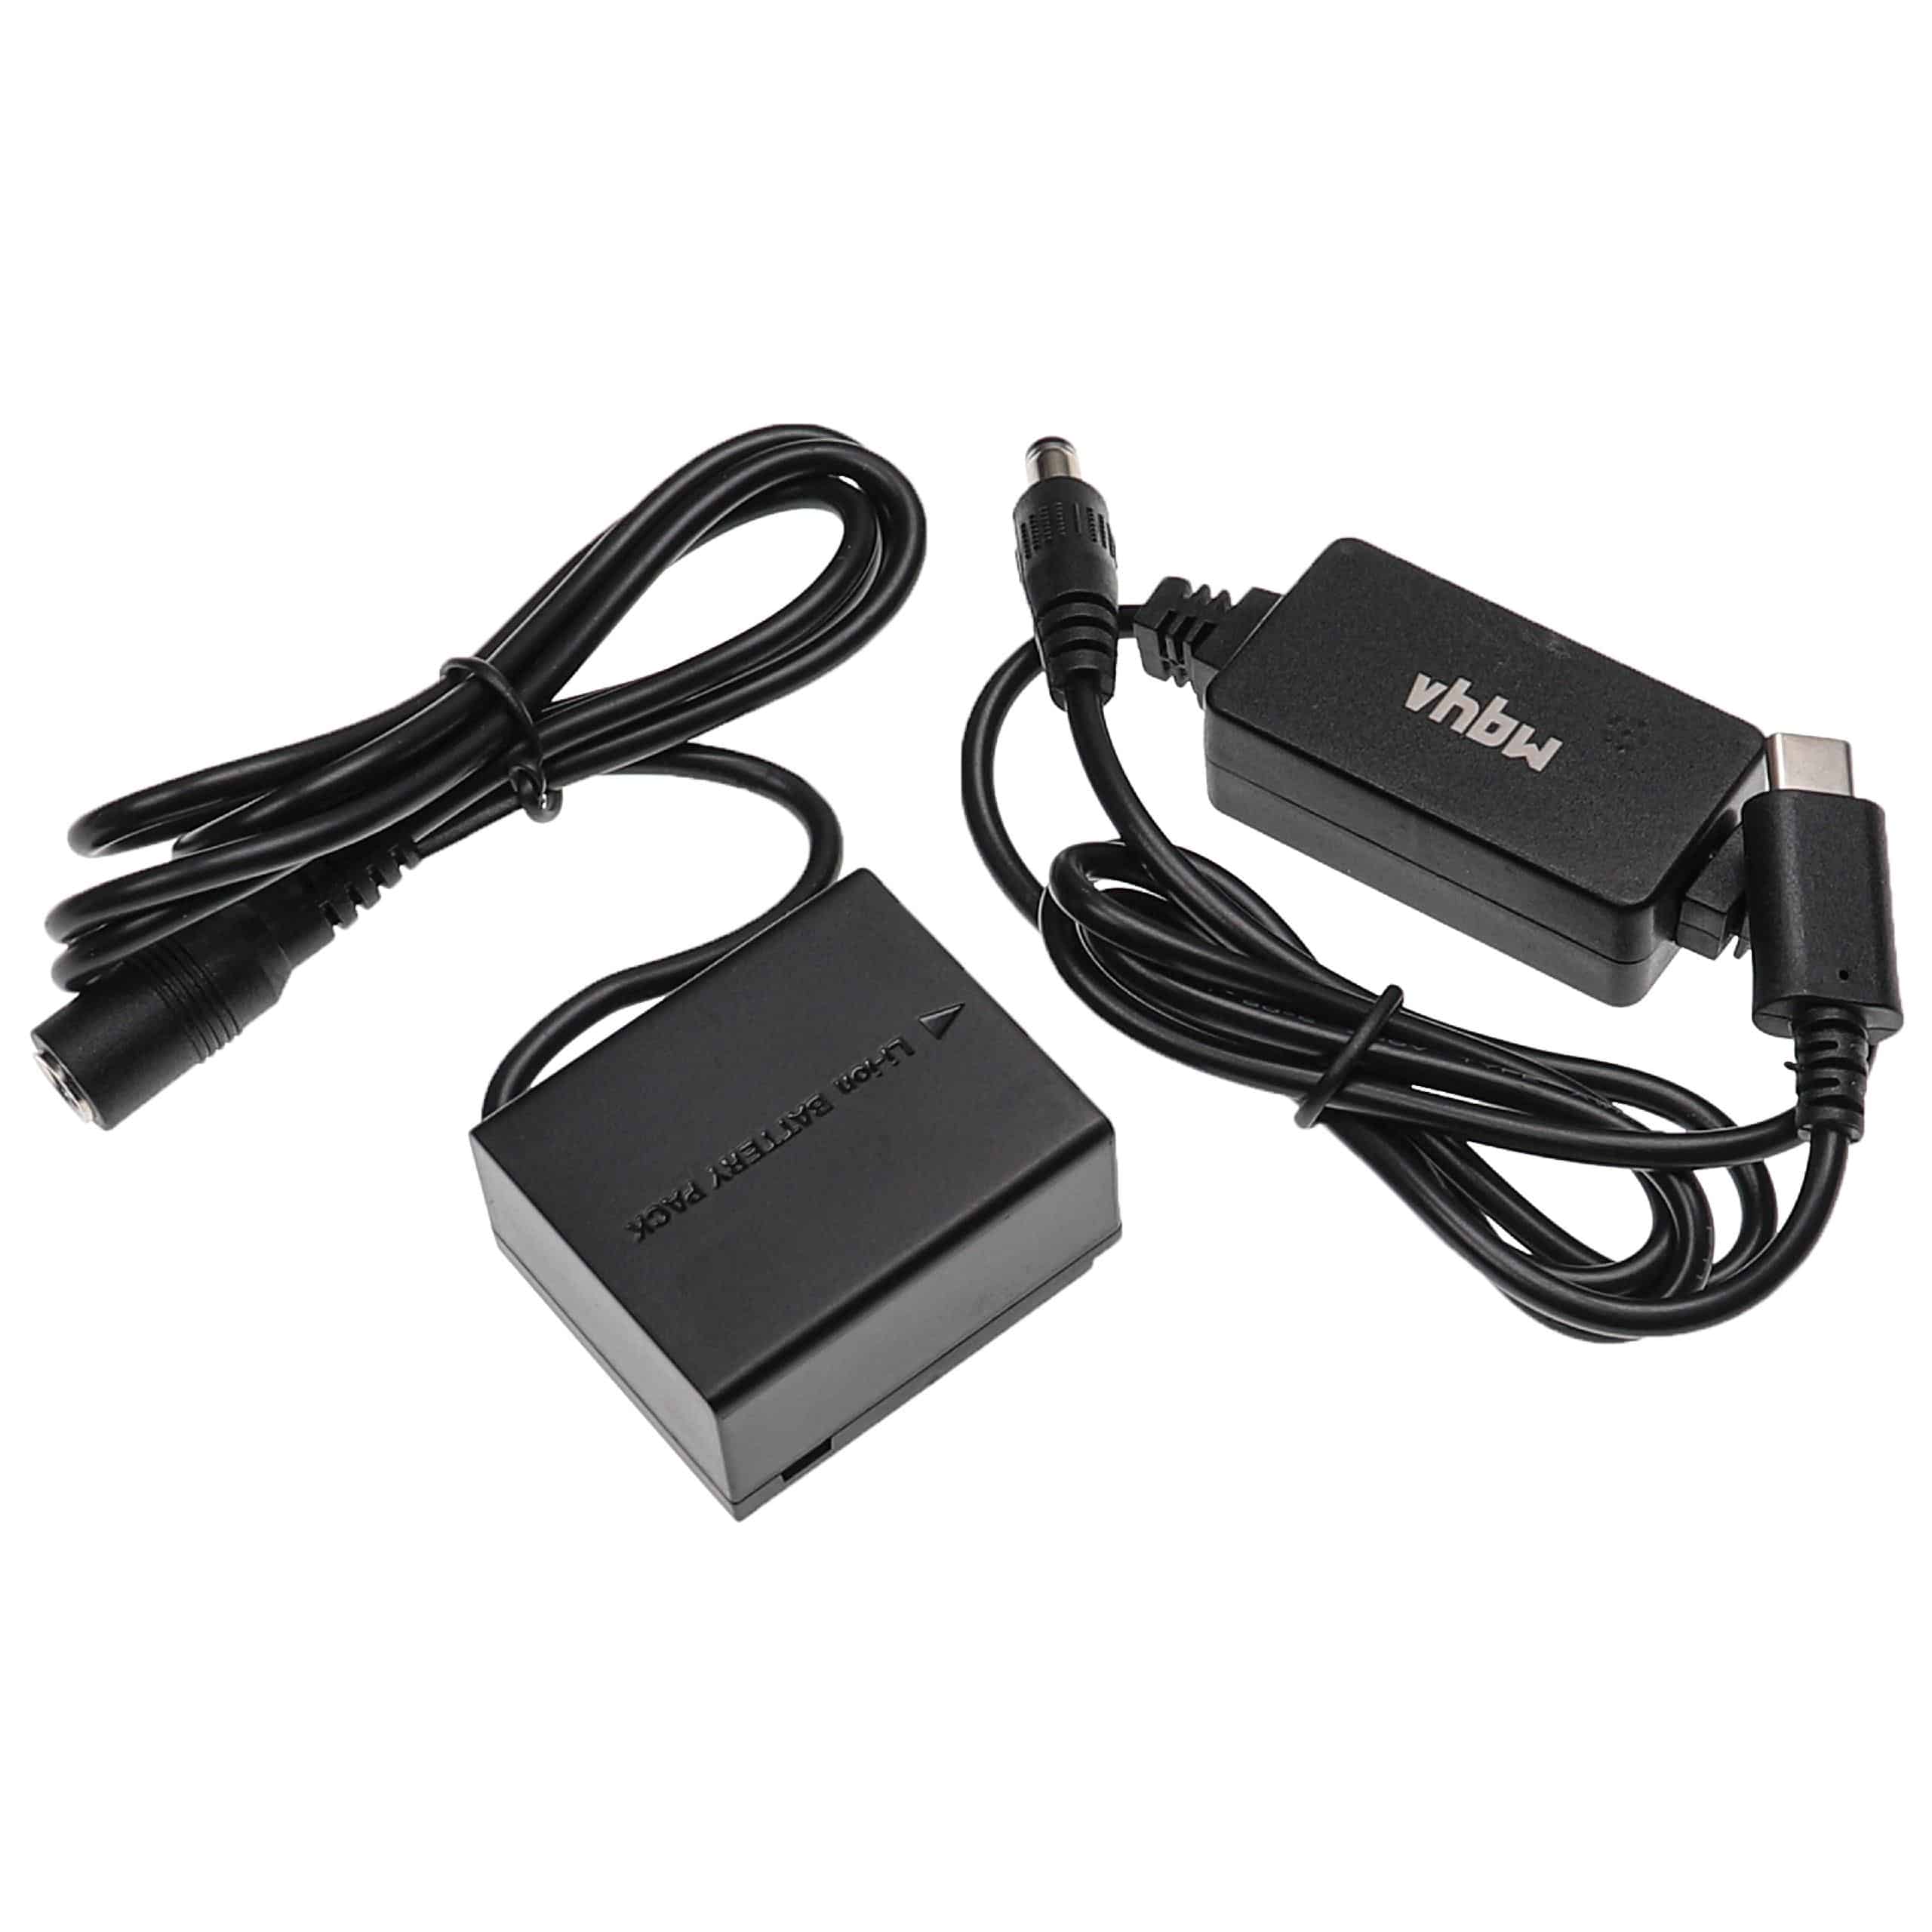 Zasilacz USB do aparatu zam. DMW-AC8 + adapter zam. Panasonic DMW-DCC3 - 2 m, 8,4 V 3,0 A